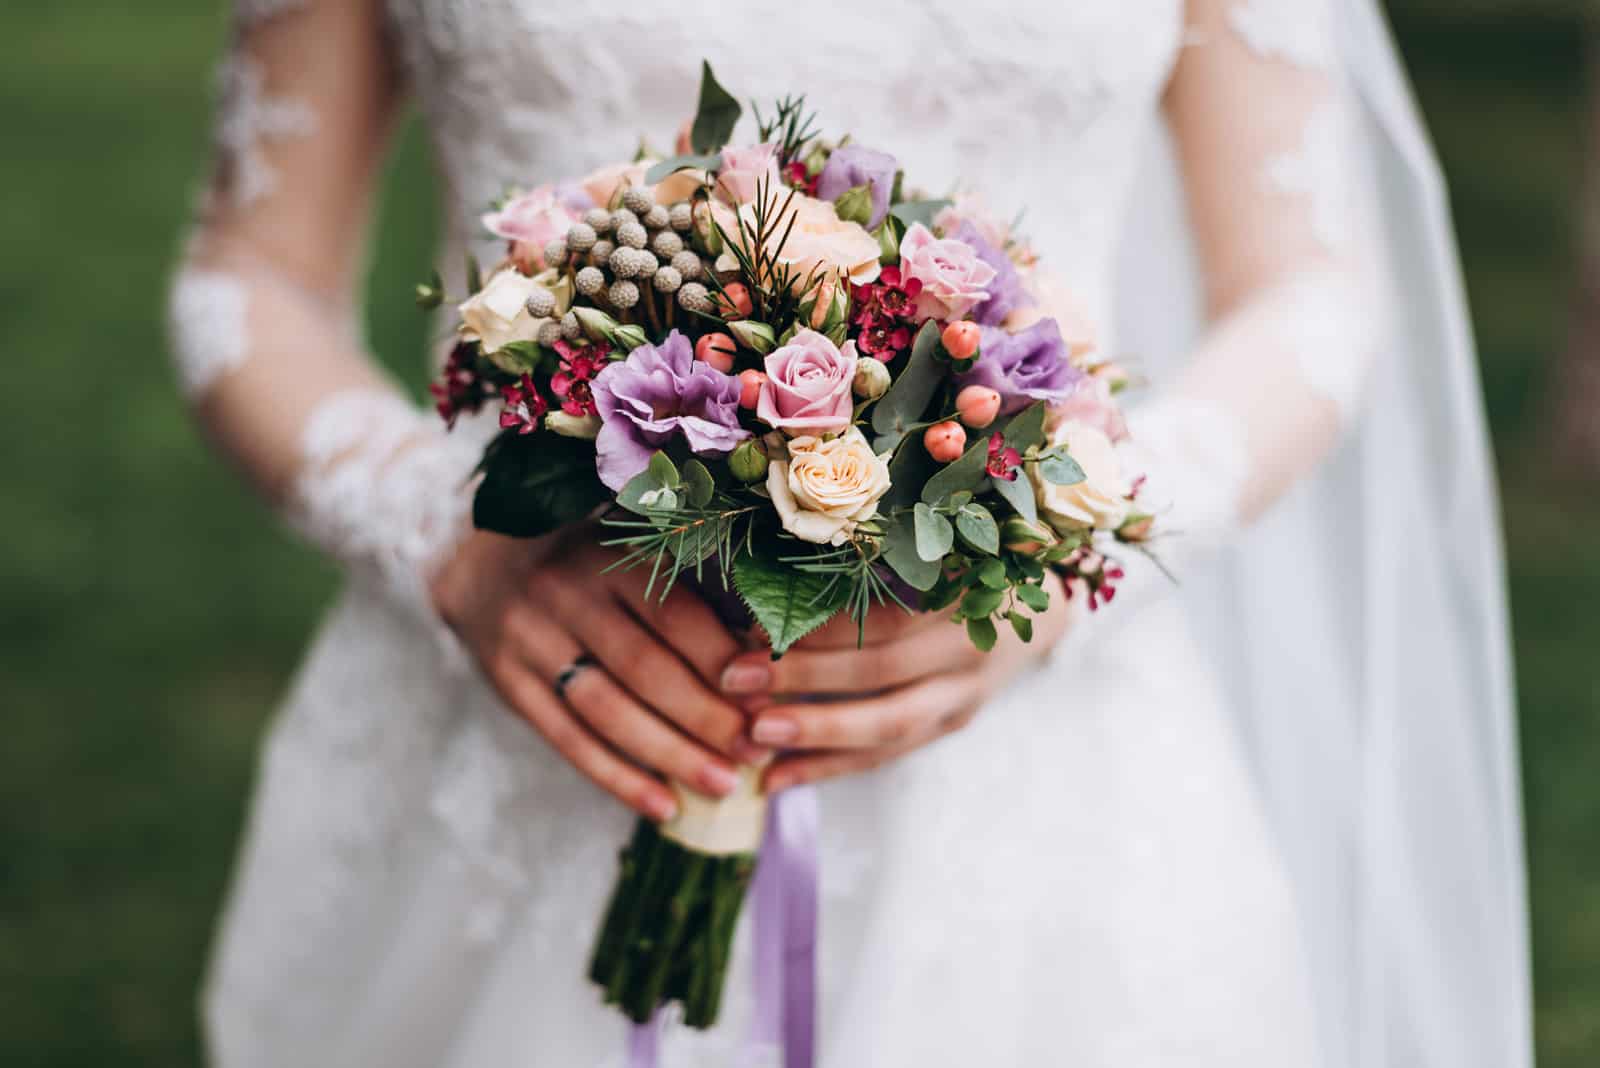 Braut in einem weißen Hochzeitskleid hält einen Hochzeitsstrauß